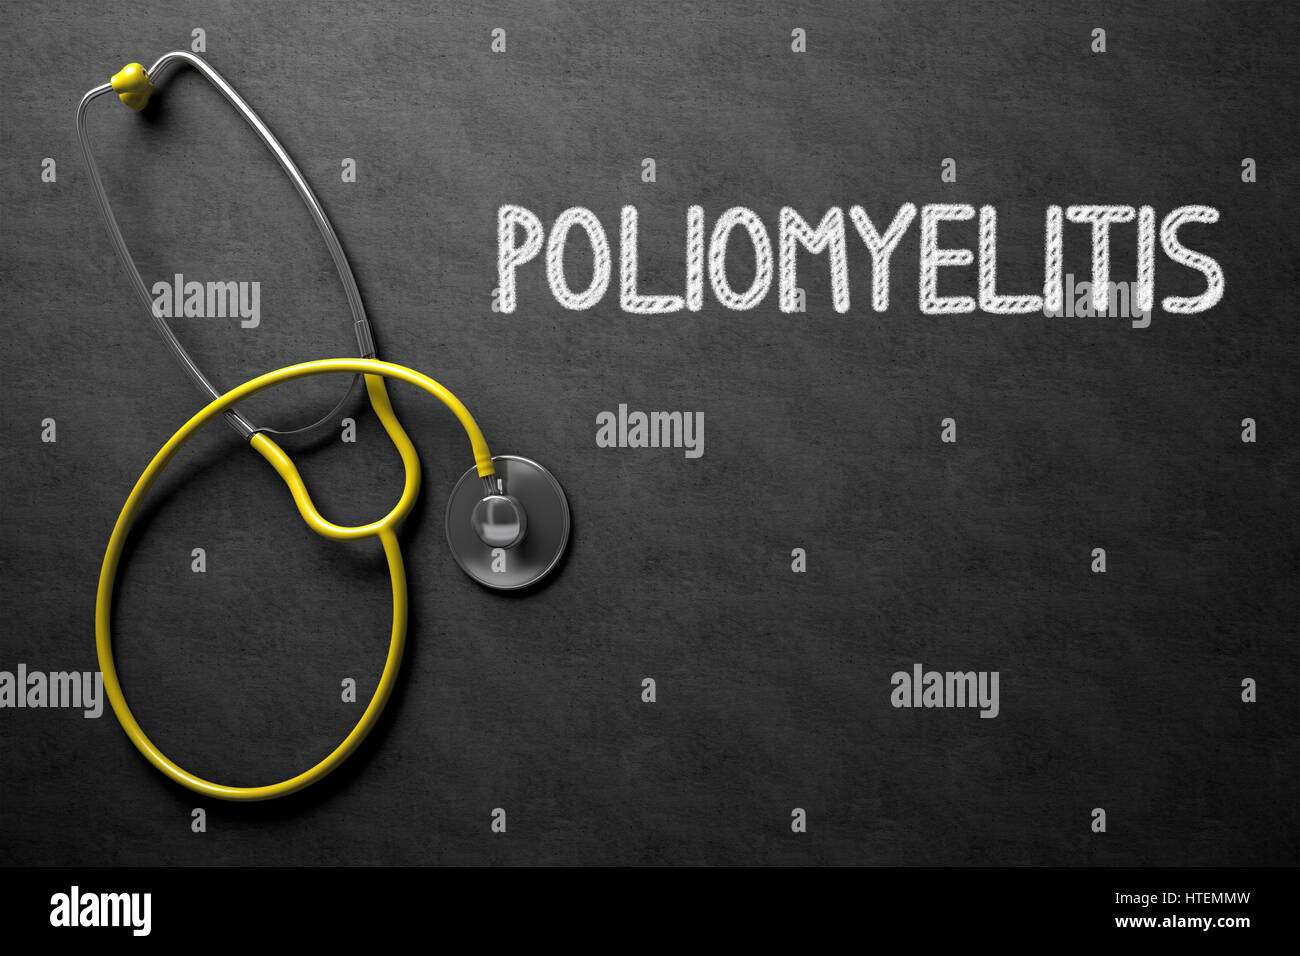 Concetto medico: la poliomielite - concetto medico sulla lavagna. Concetto medico: la poliomielite - lavagna nera con la mano il testo disegnato e urlare Foto Stock